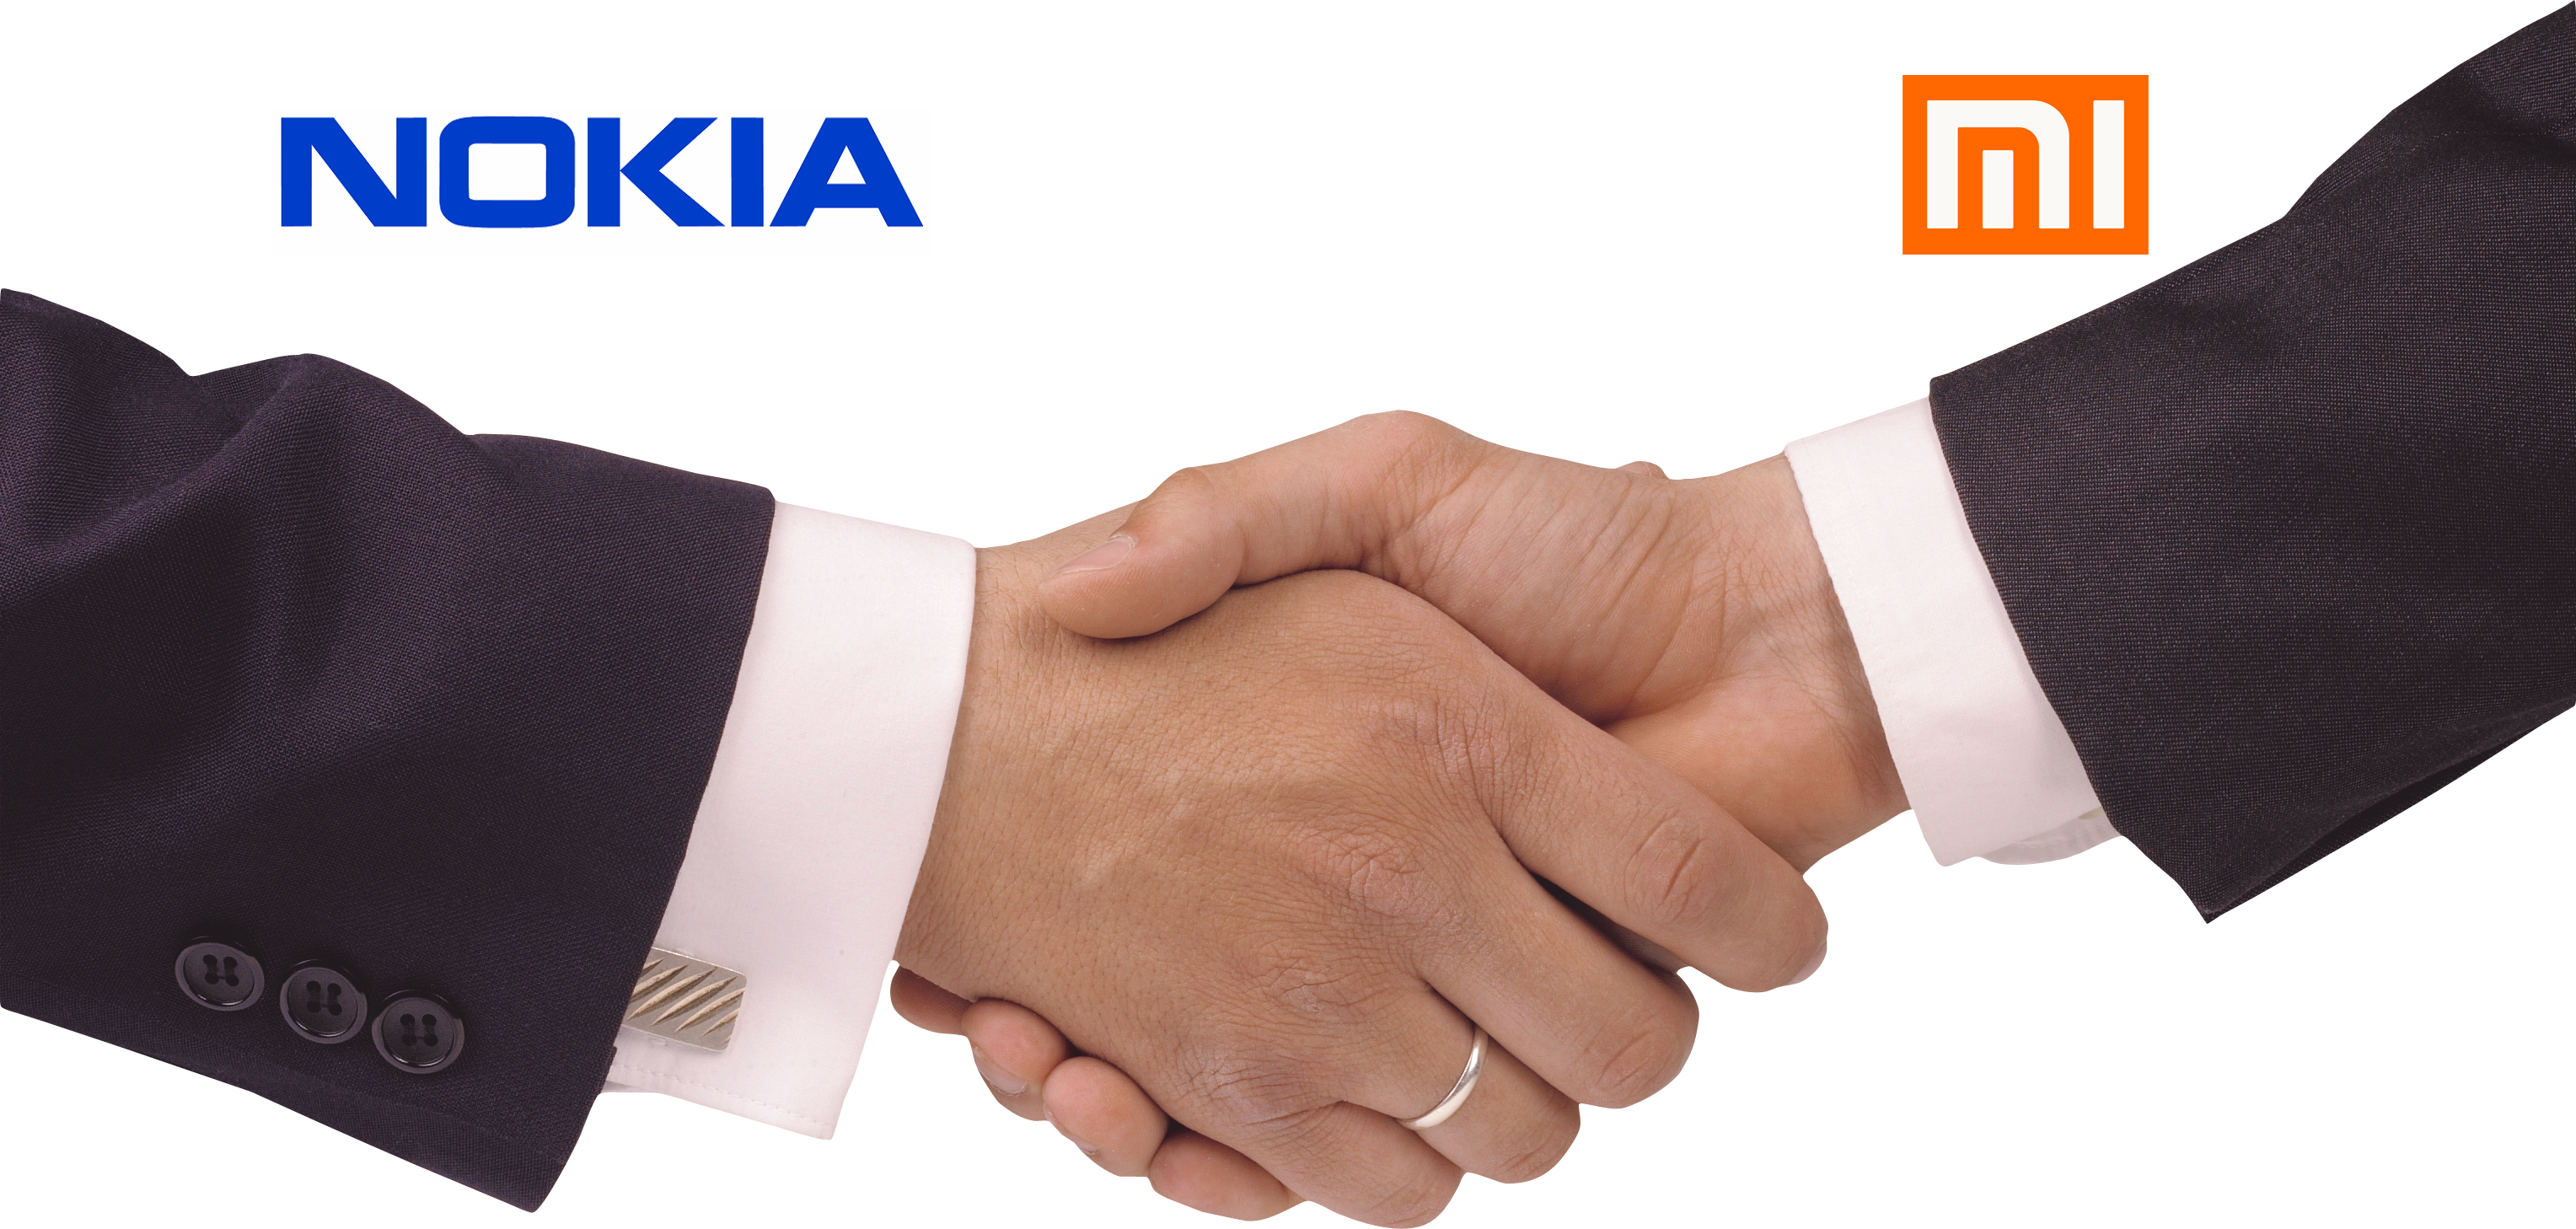 Nokia, Nokia logo, Nokia hand logo